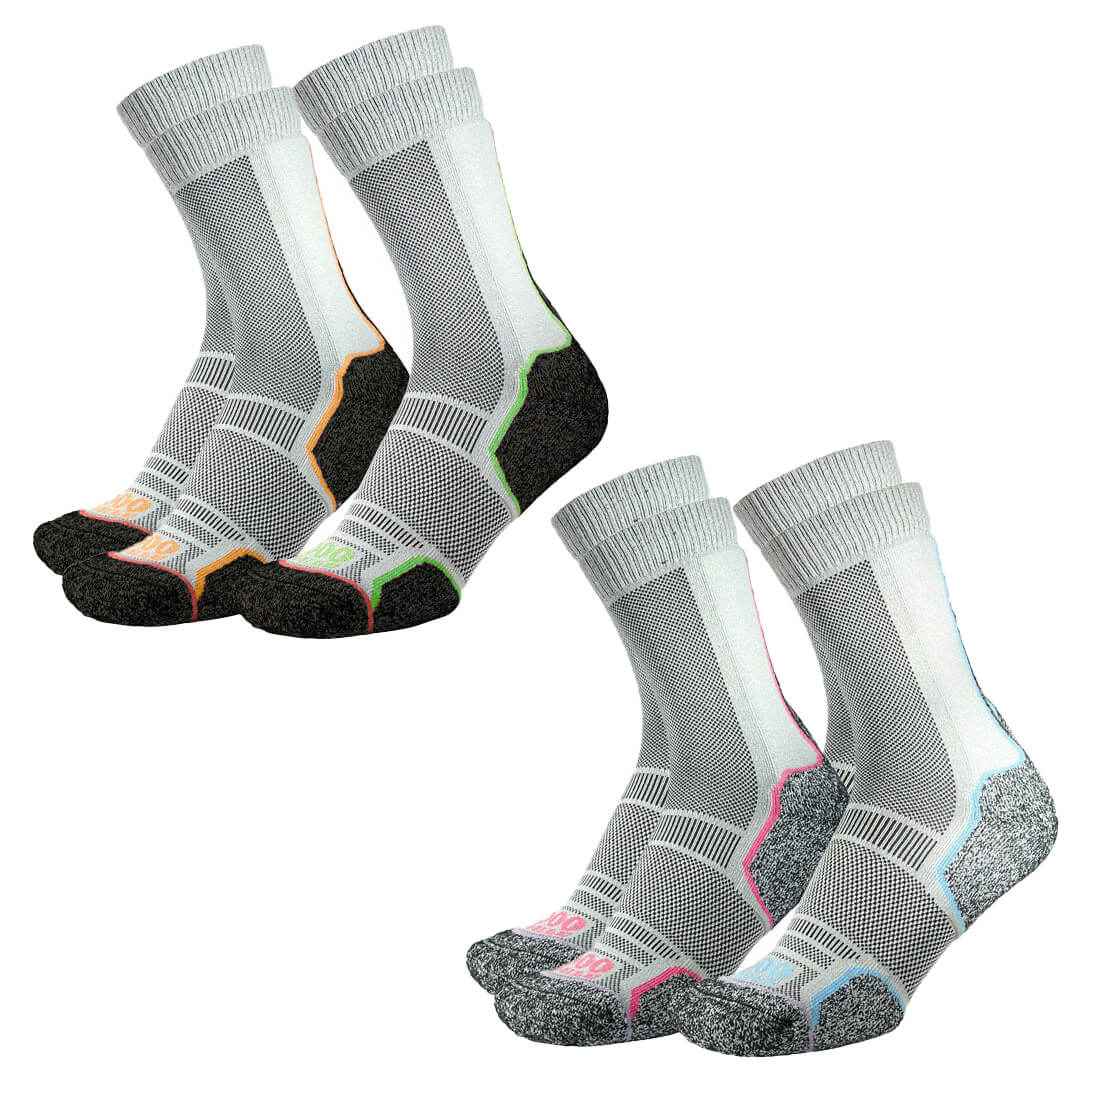 1000 Mile Trek Repreve Single Layer Twin Pack Socks - John Bull Clothing